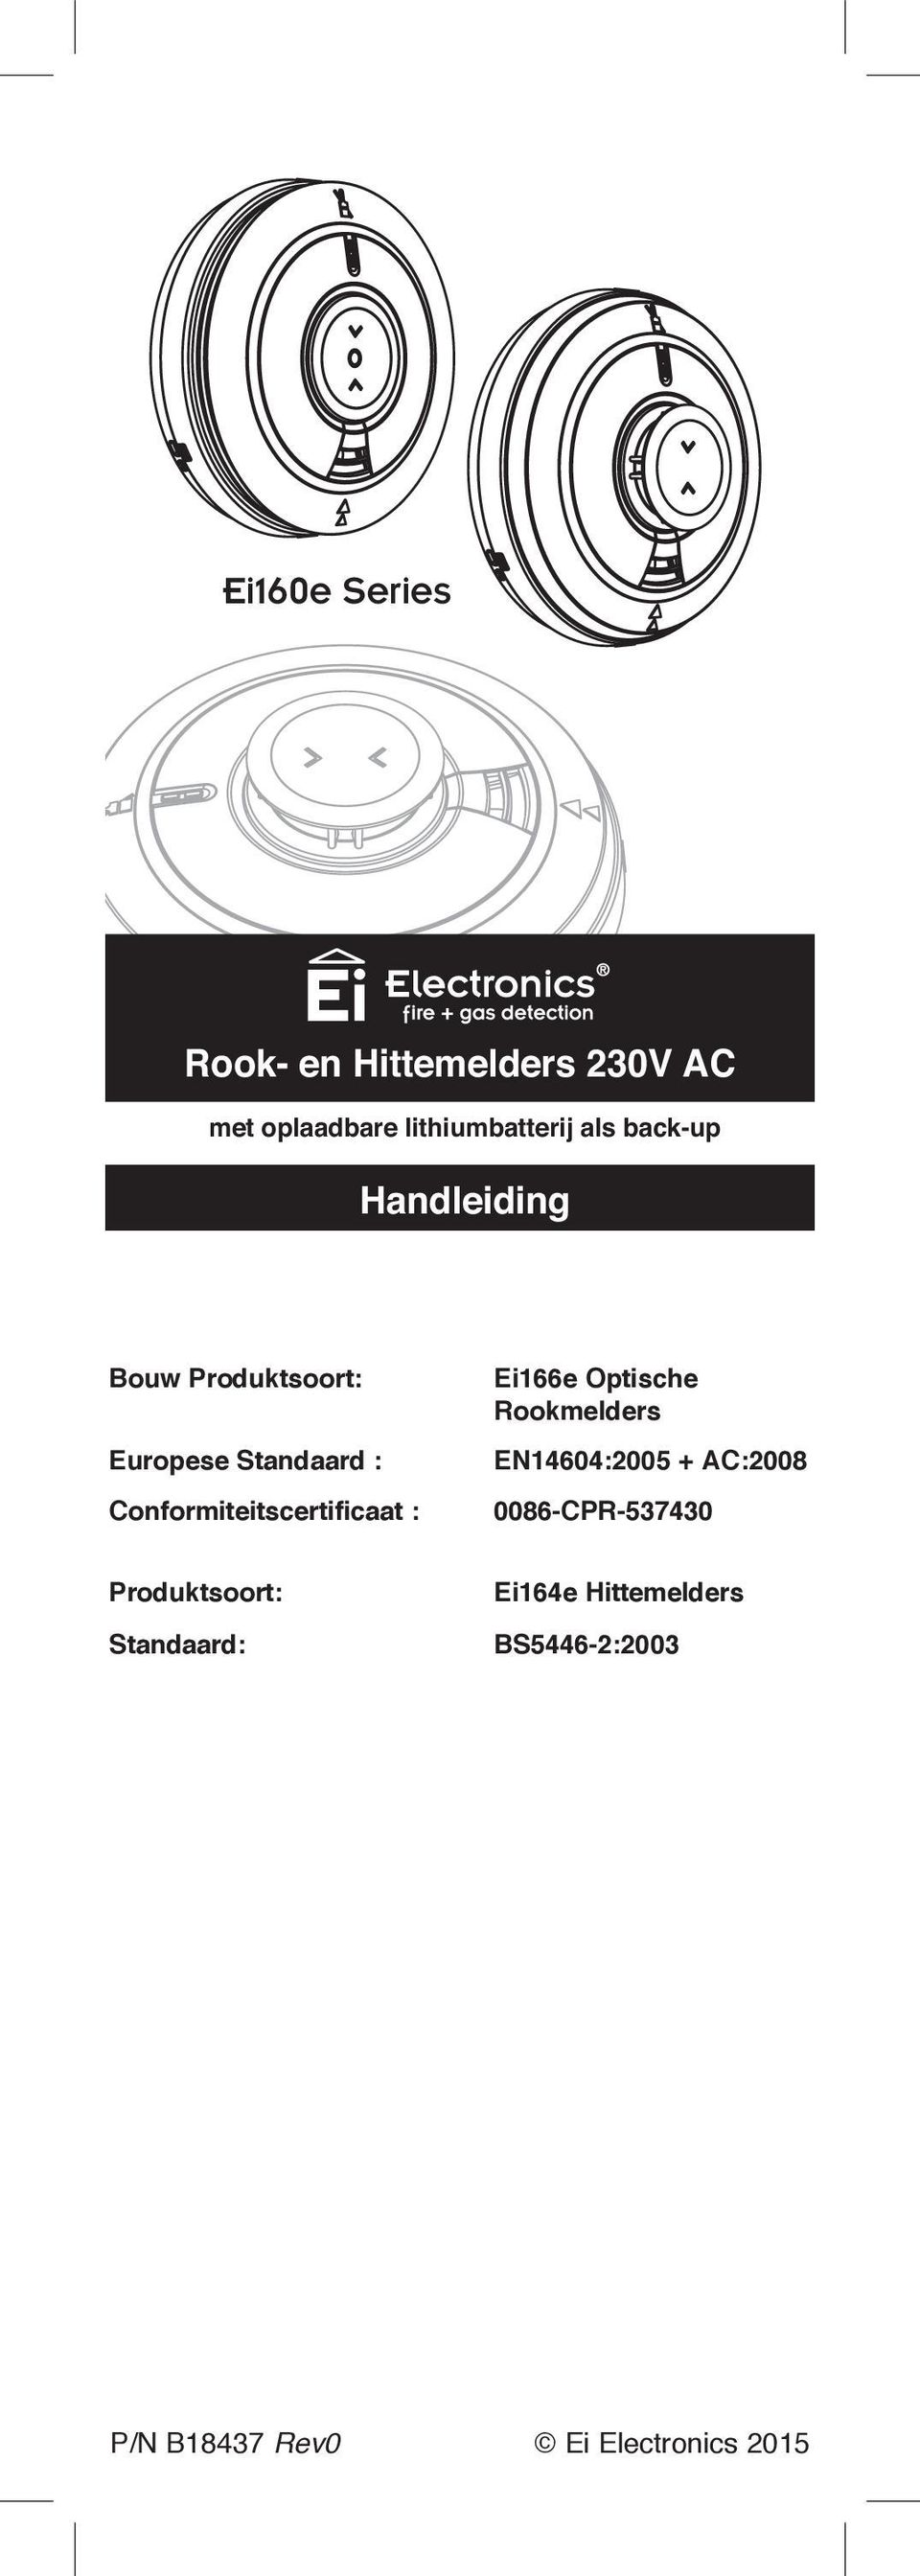 Conformiteitscertificaat : Ei166e Optische Rookmelders EN14604:2005 + AC:2008